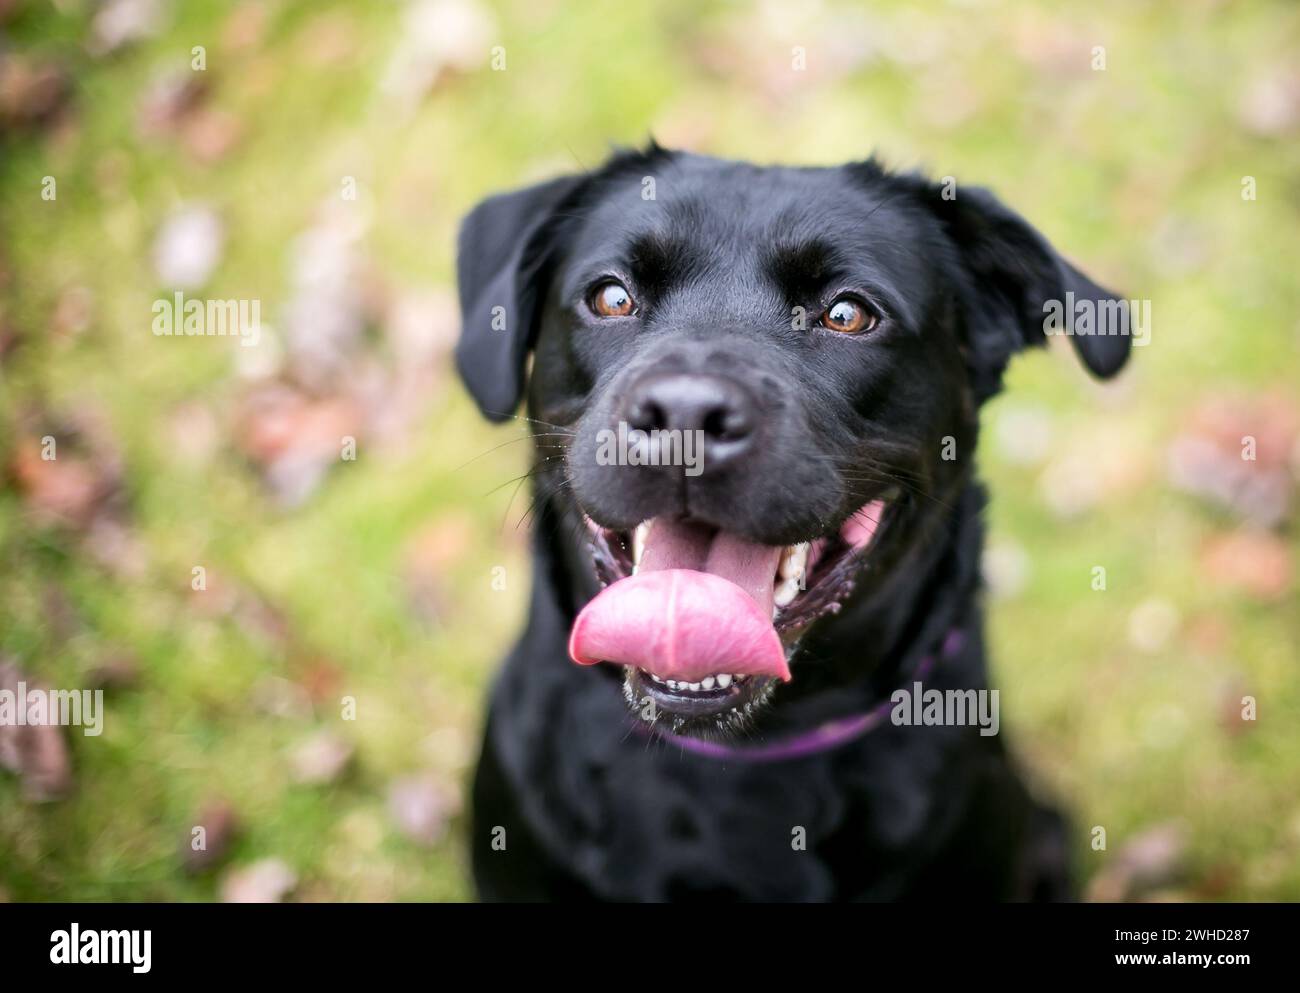 Un Labrador Retriever noir de race mixte levant les yeux avec une expression joyeuse et haletant Banque D'Images